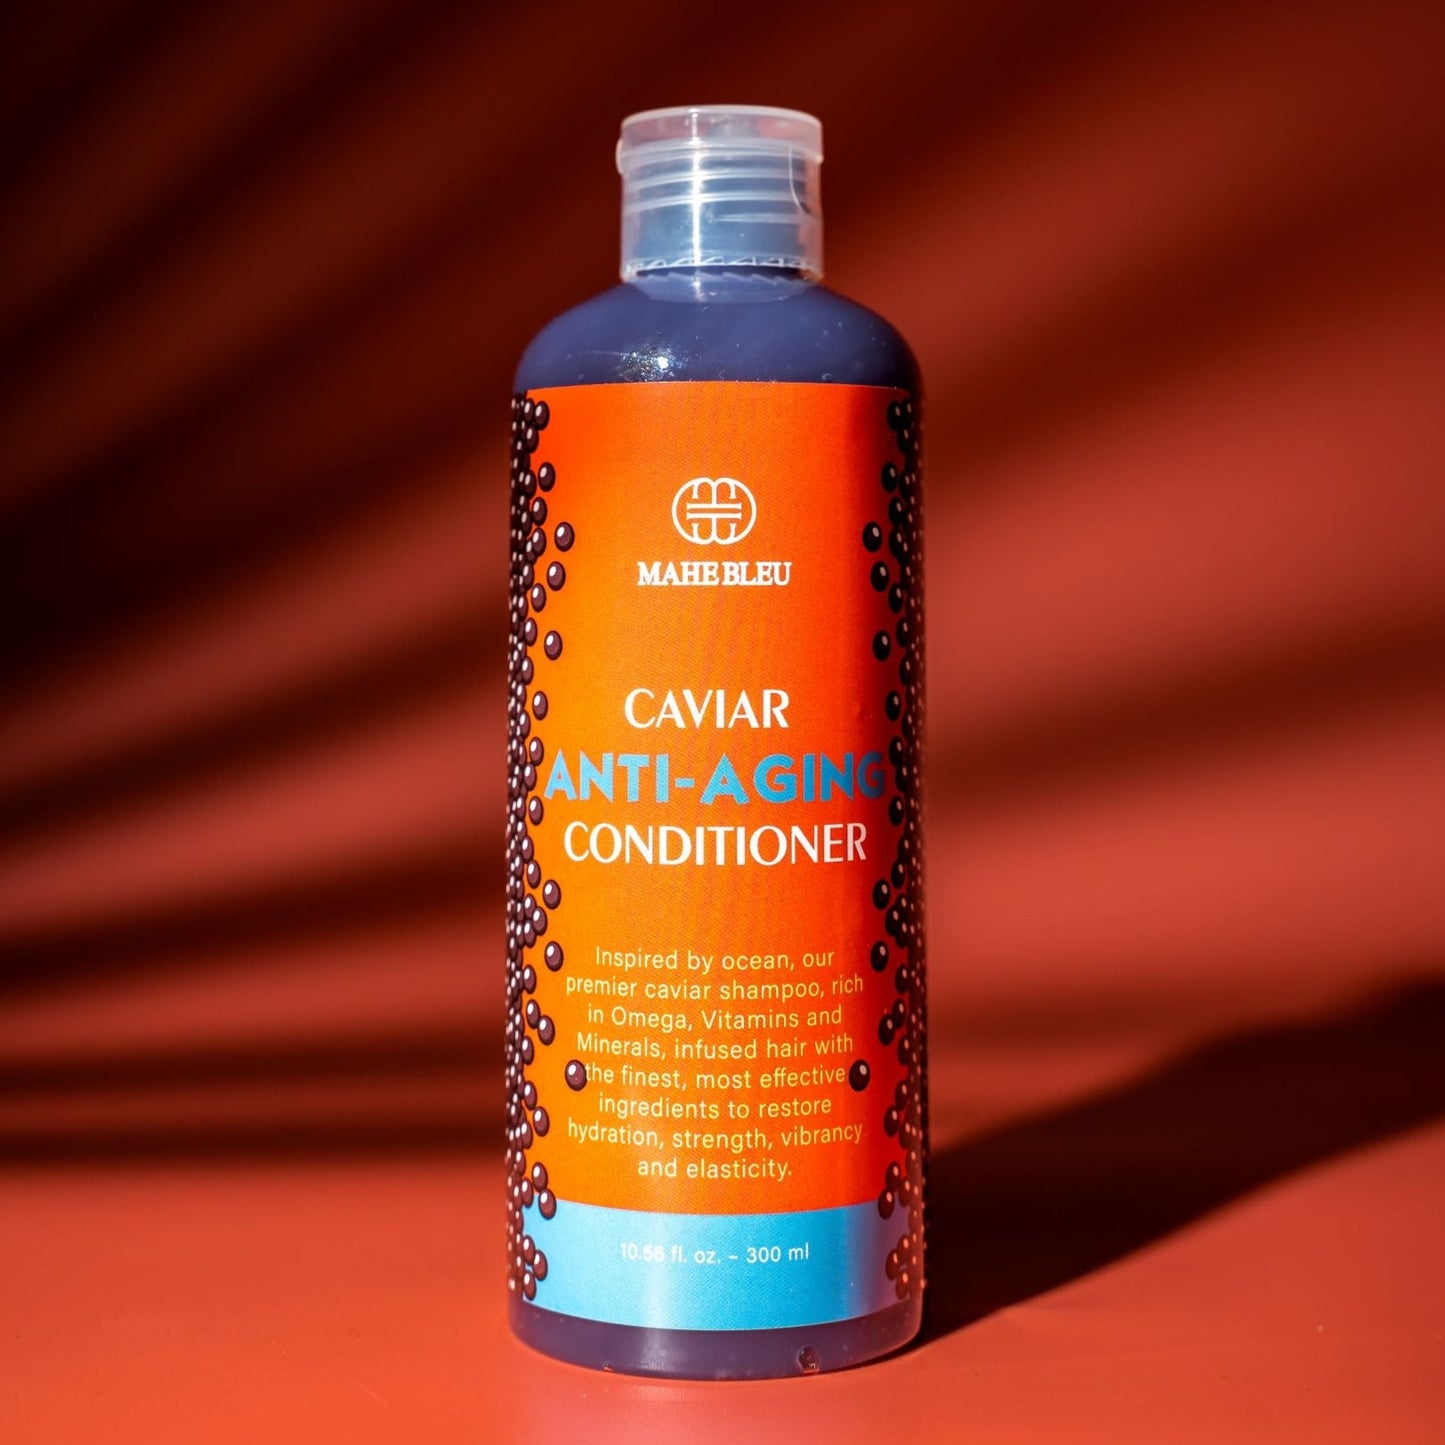 Caviar Anti-Aging Conditioner